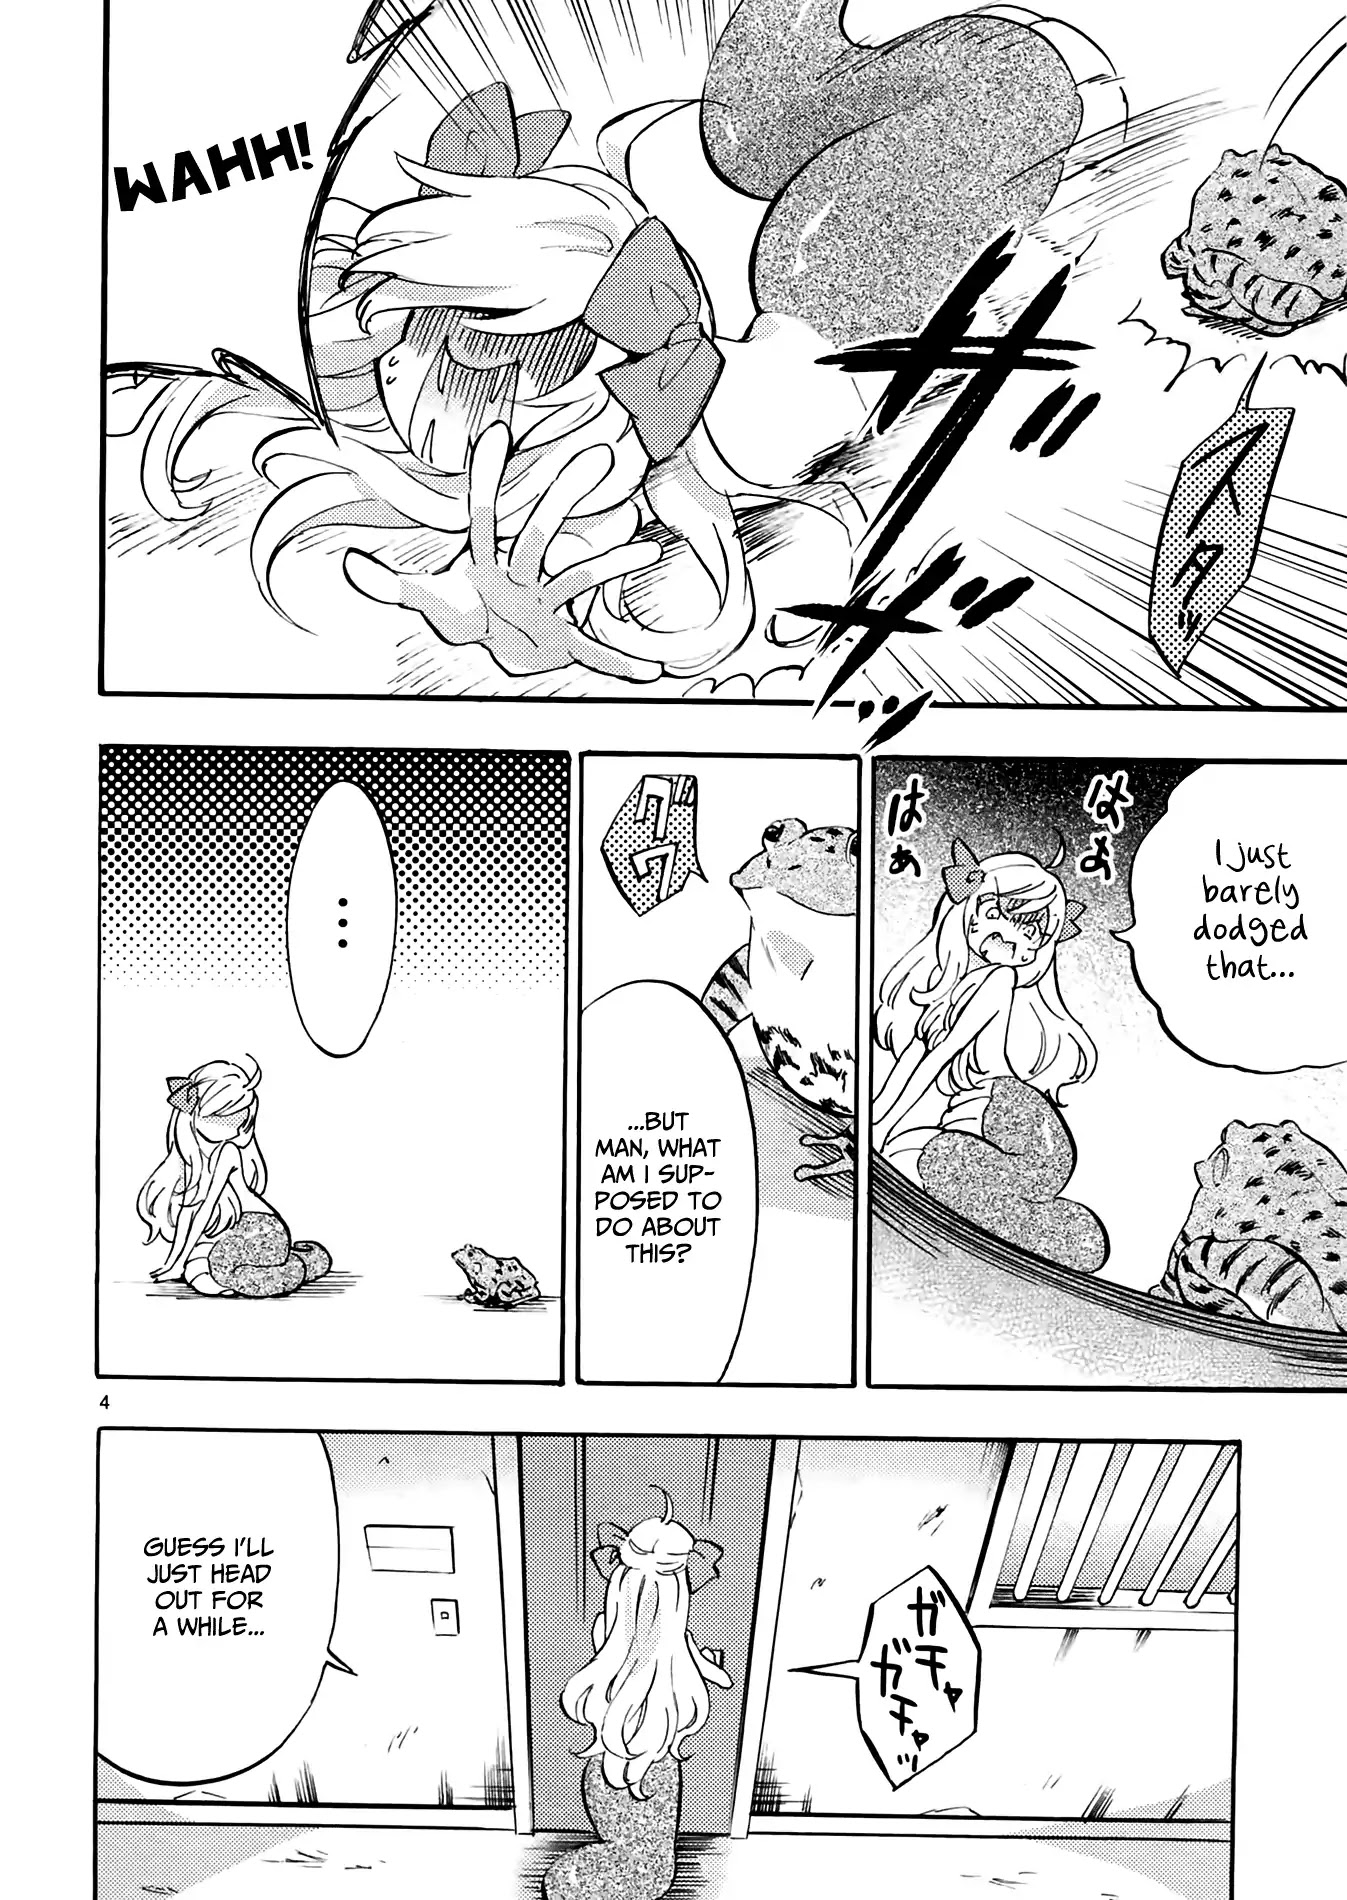 Jashin-chan Dropkick chapter 35 page 4